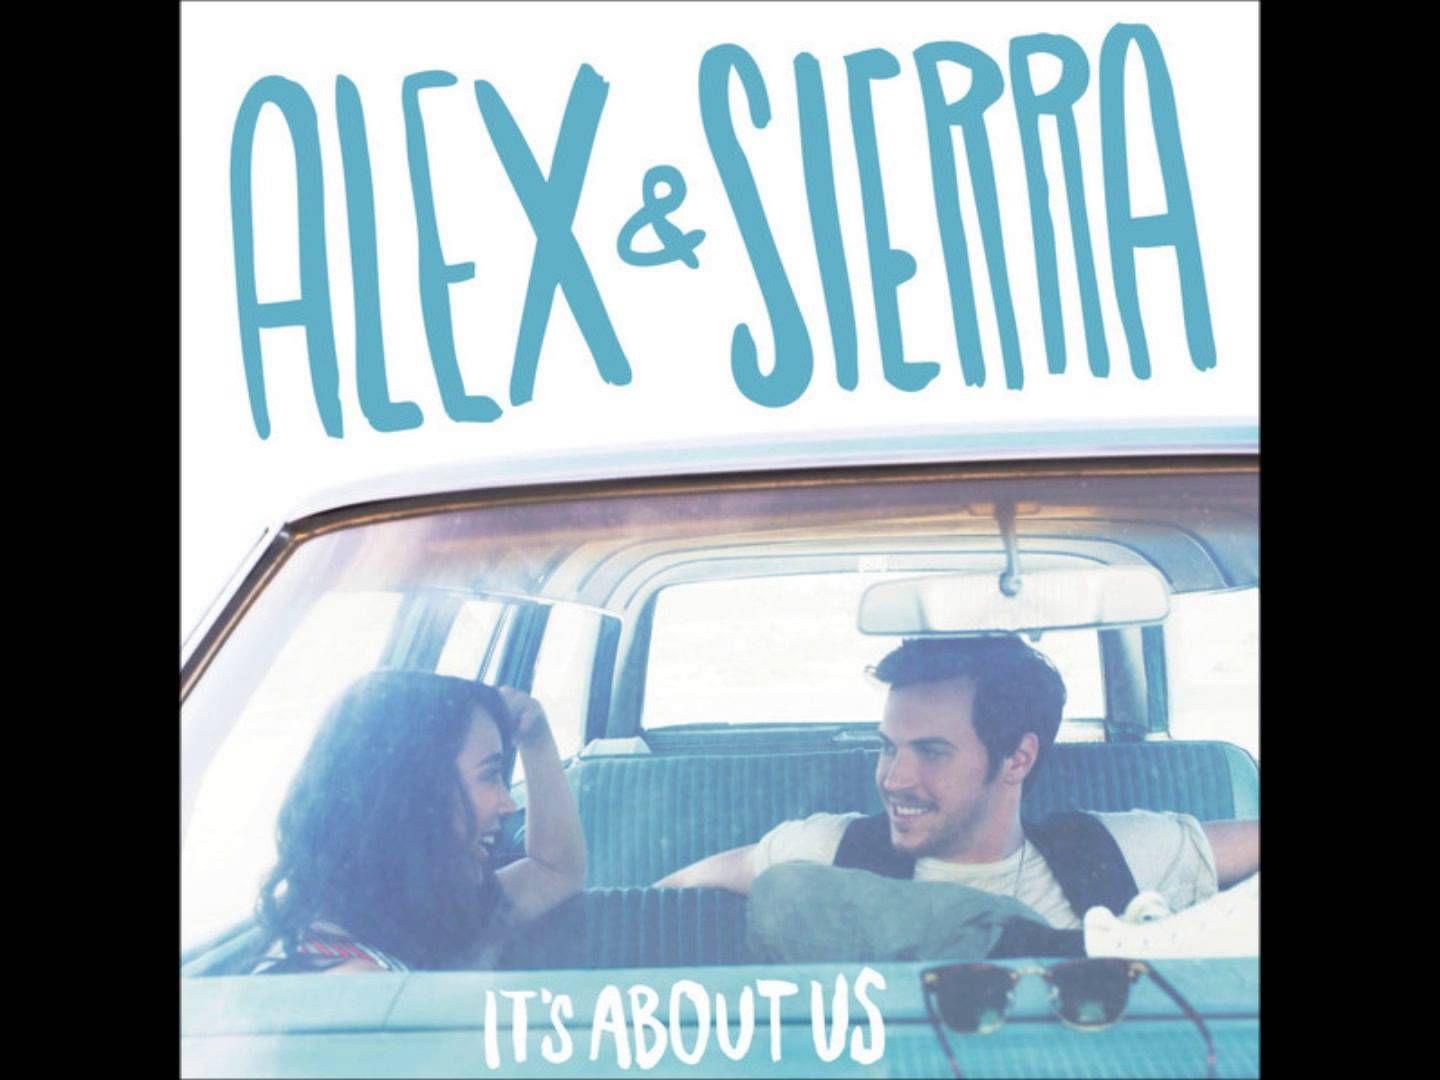 Alex & Sierra Do You Know (Audio). MUSIC. Alex